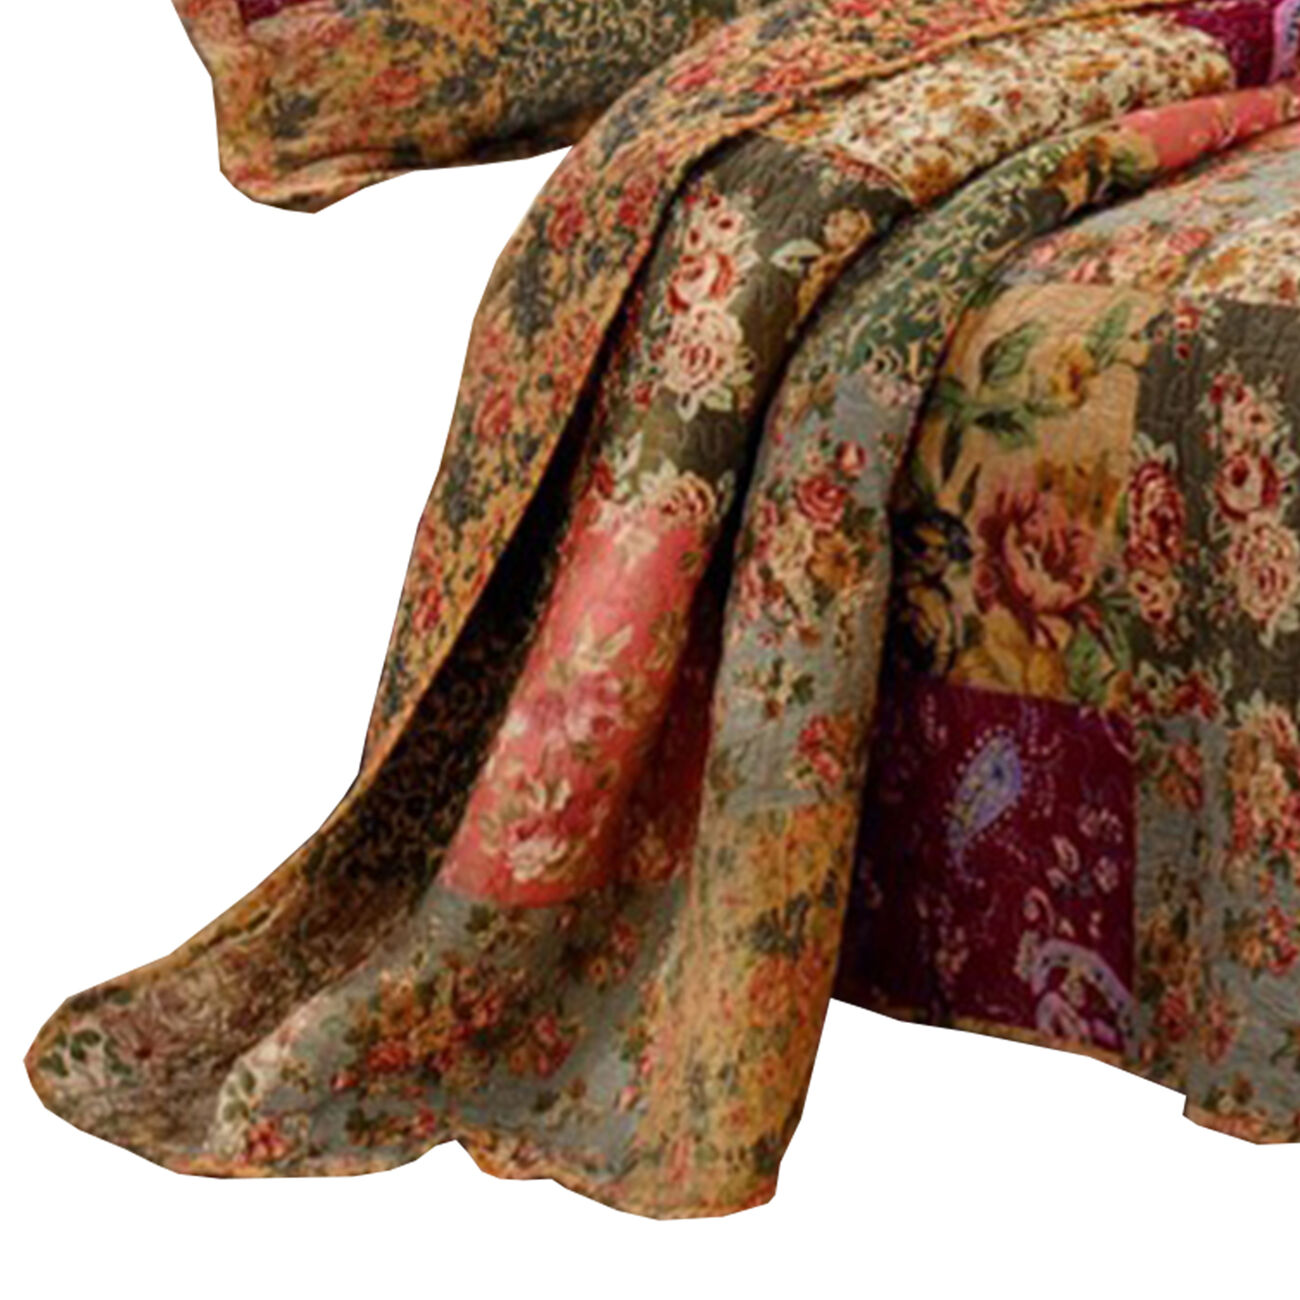 Kamet 3 Piece Fabric Queen Size Quilt Set with Floral Prints, Multicolor